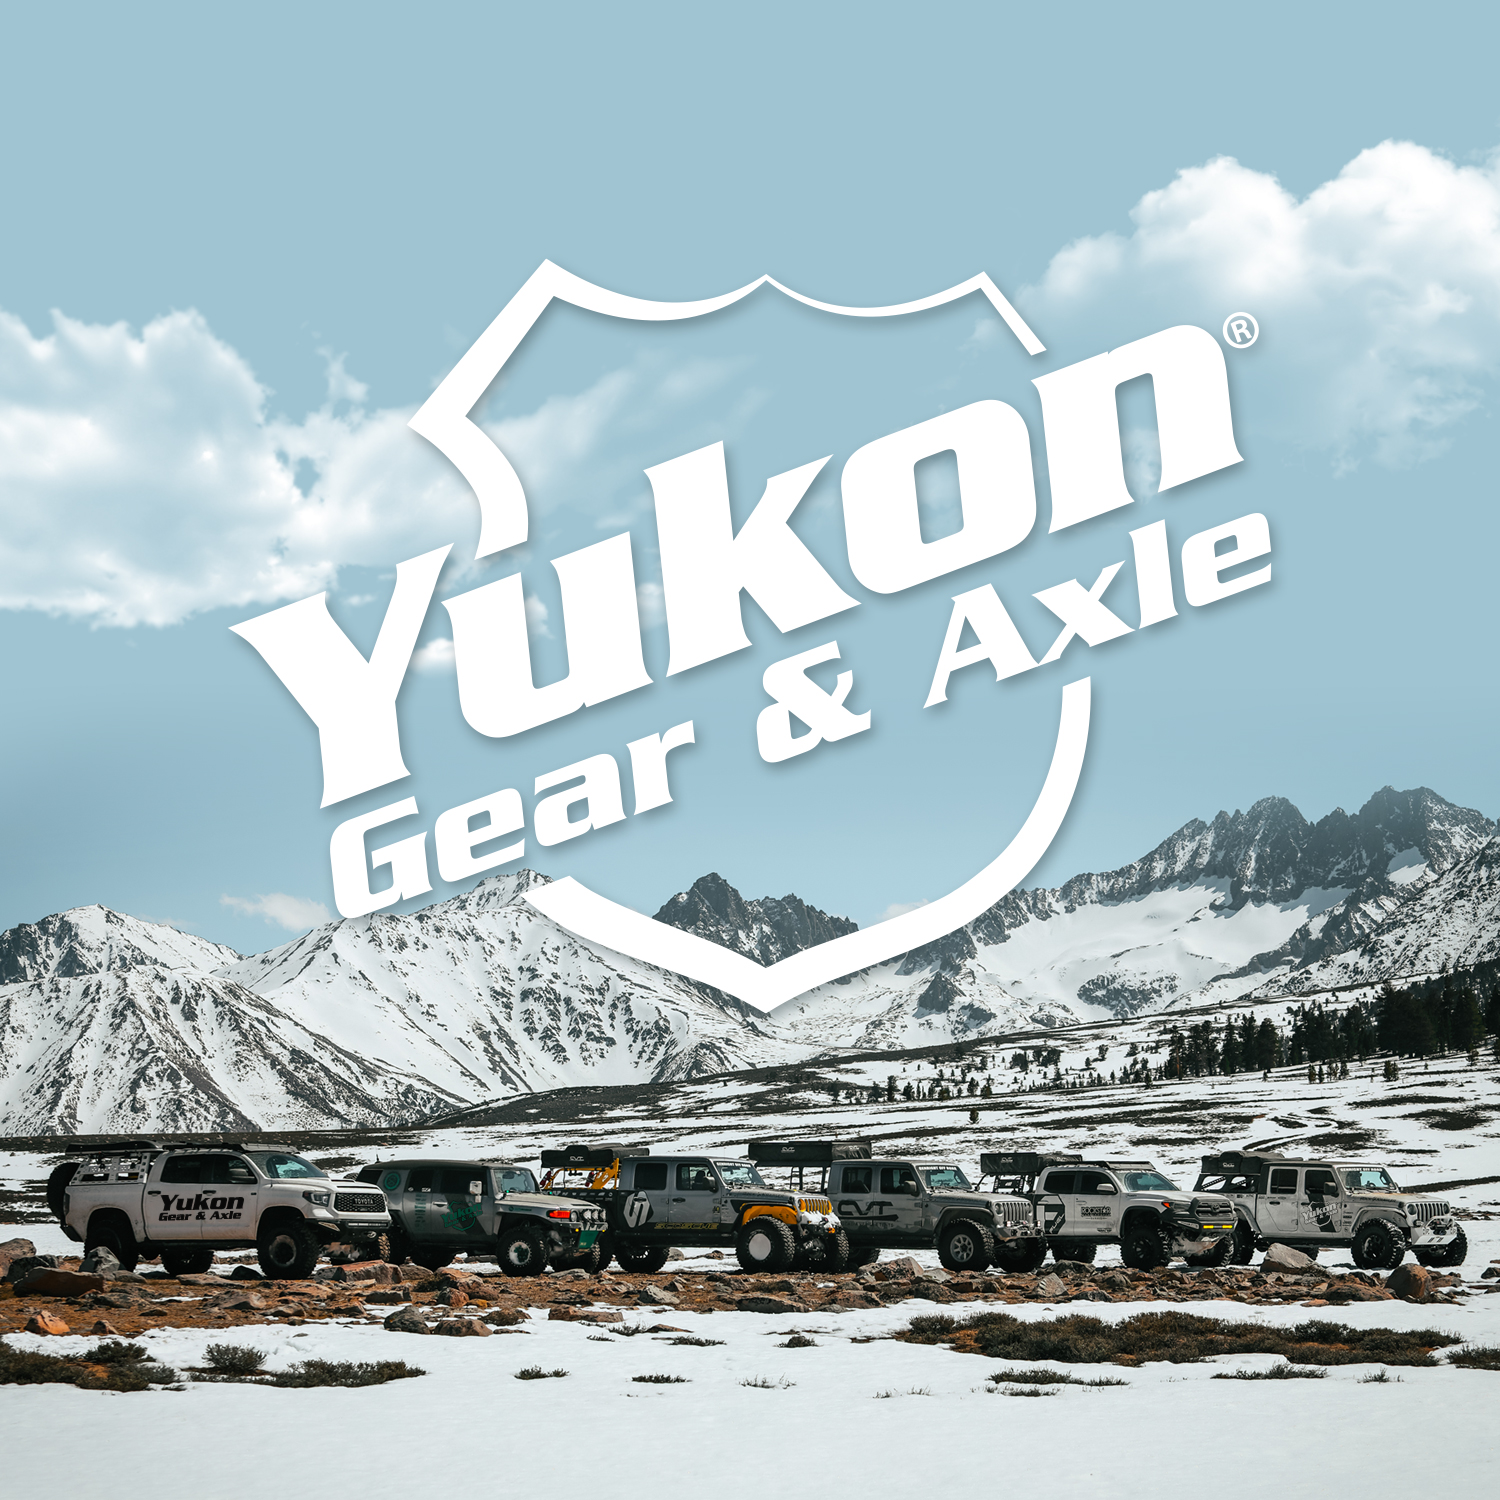 23939円 【在庫有】 Yukon YPKD60-S-30 交換用標準オープンスパイダーギアキット Dana 60ディファレンシャル用 30スプラインアクスル付き